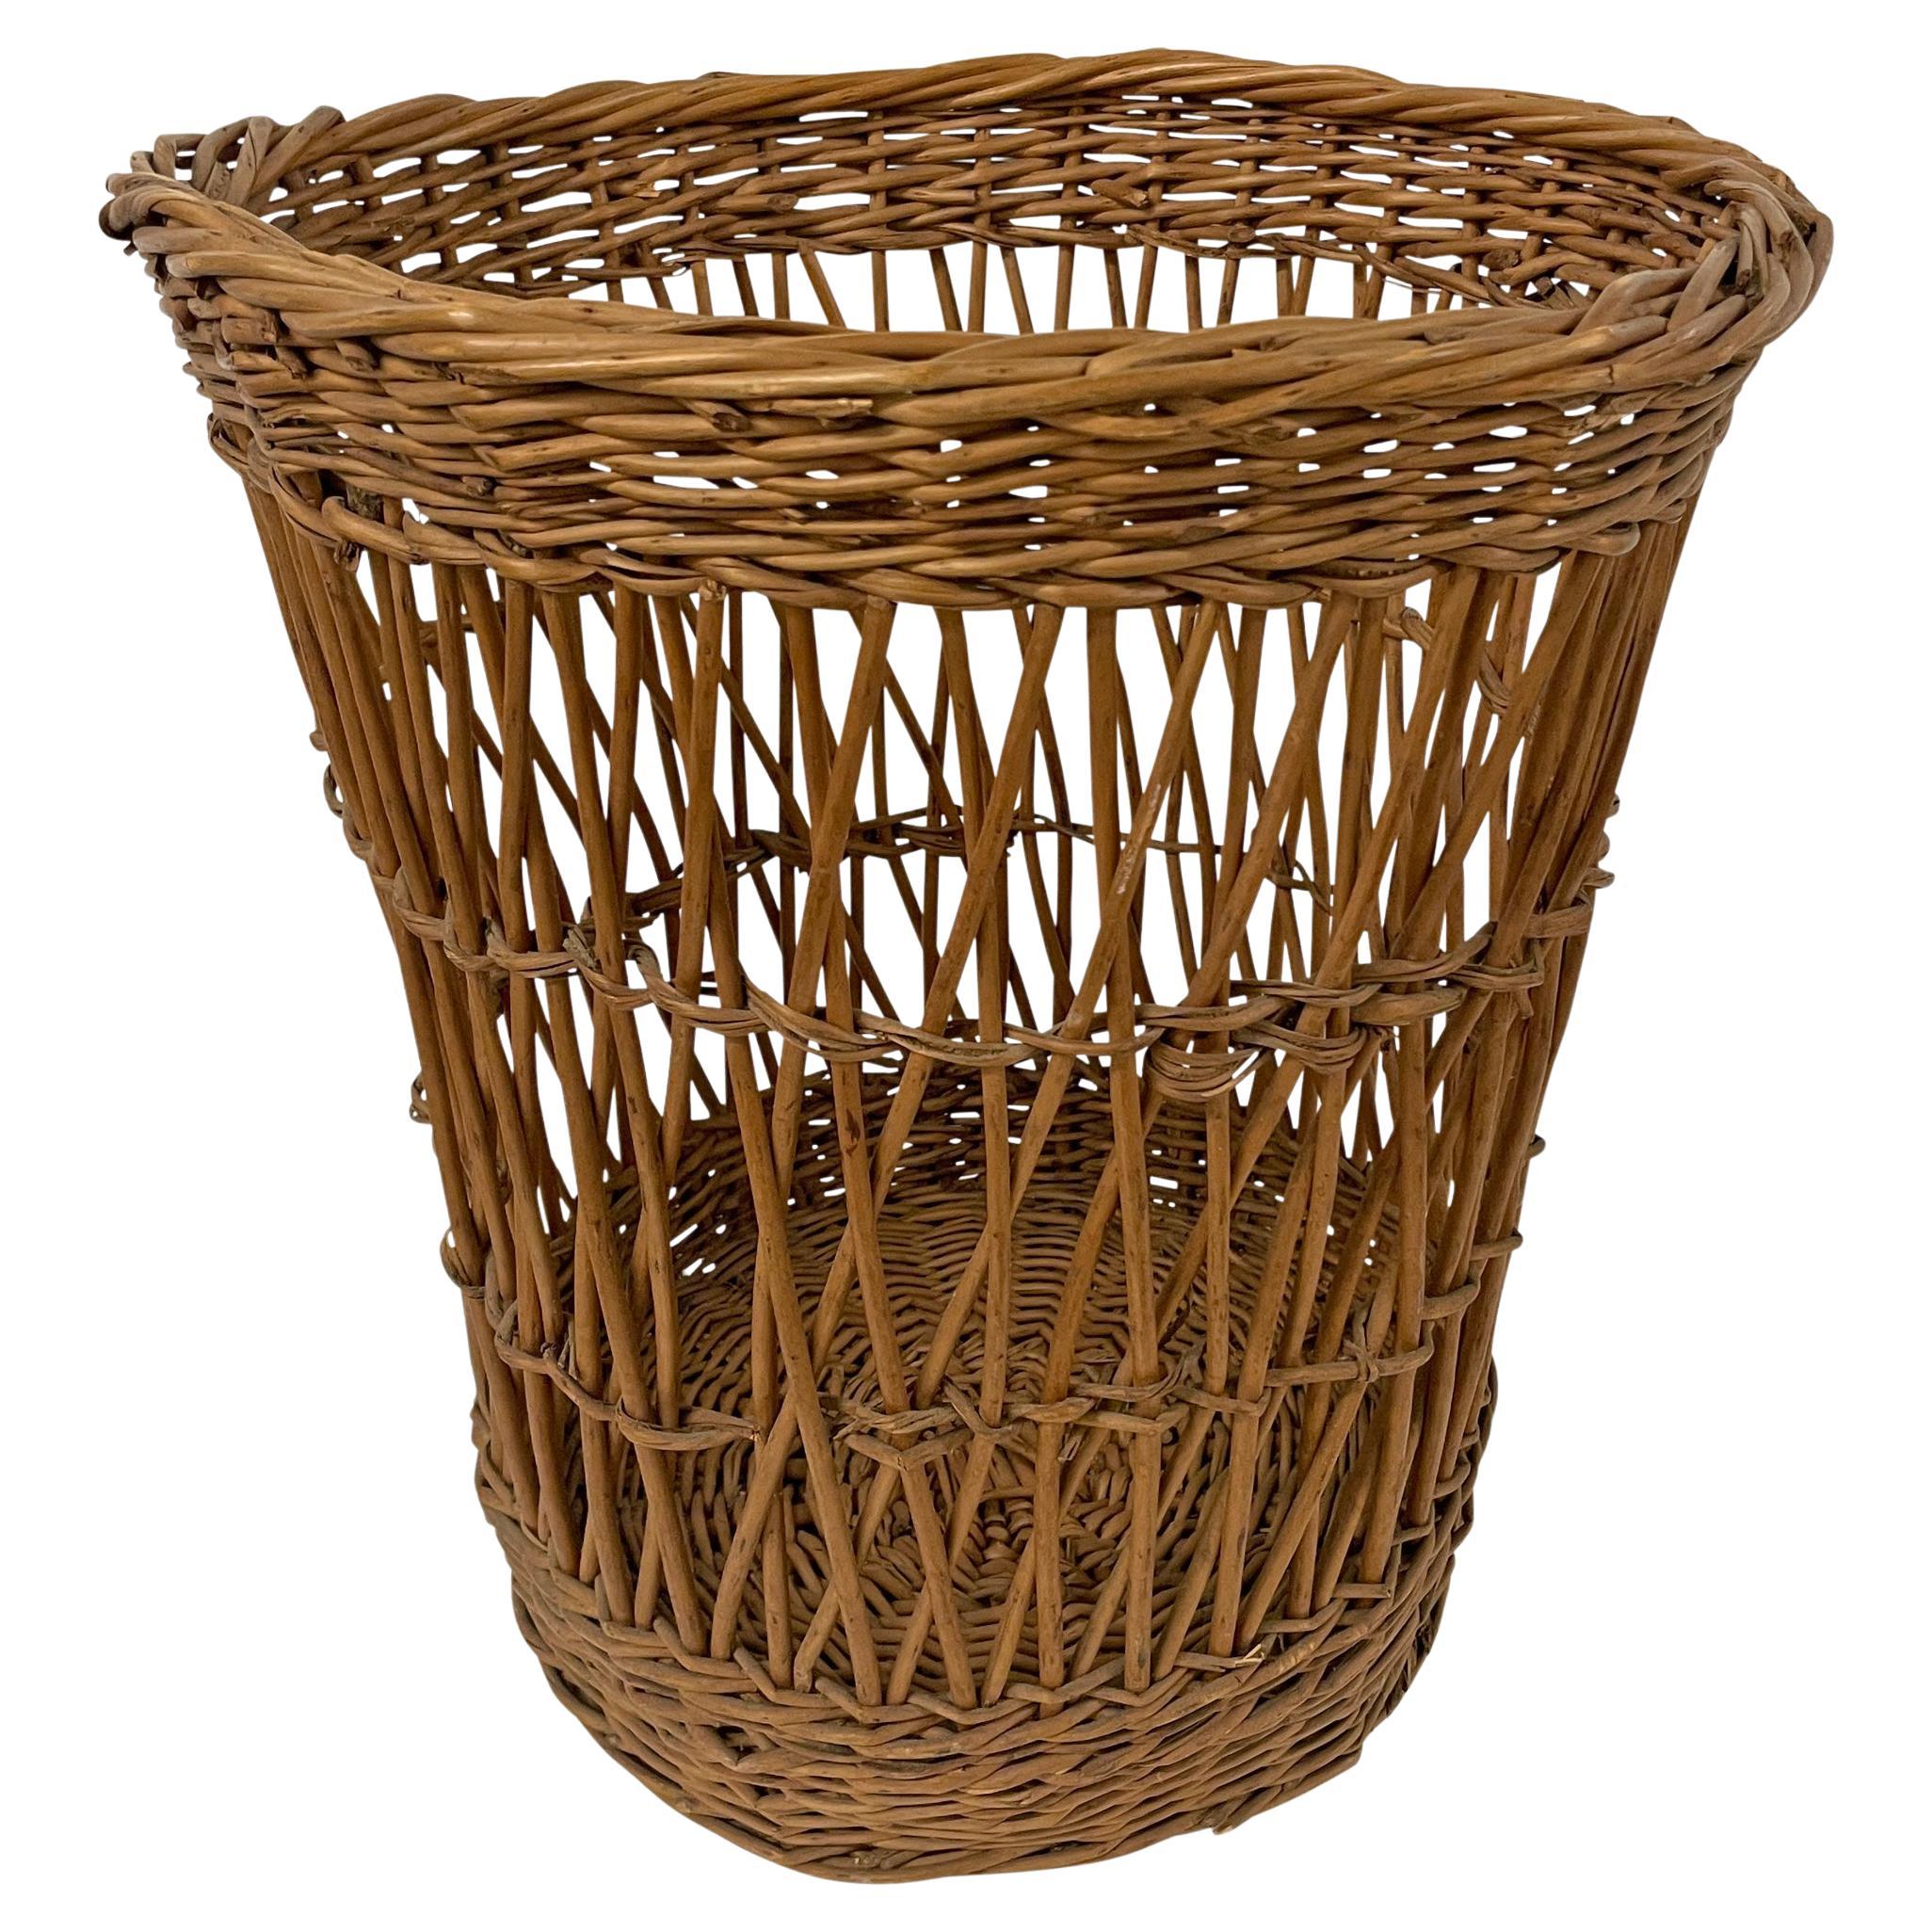 French Wicker Bakery Basket